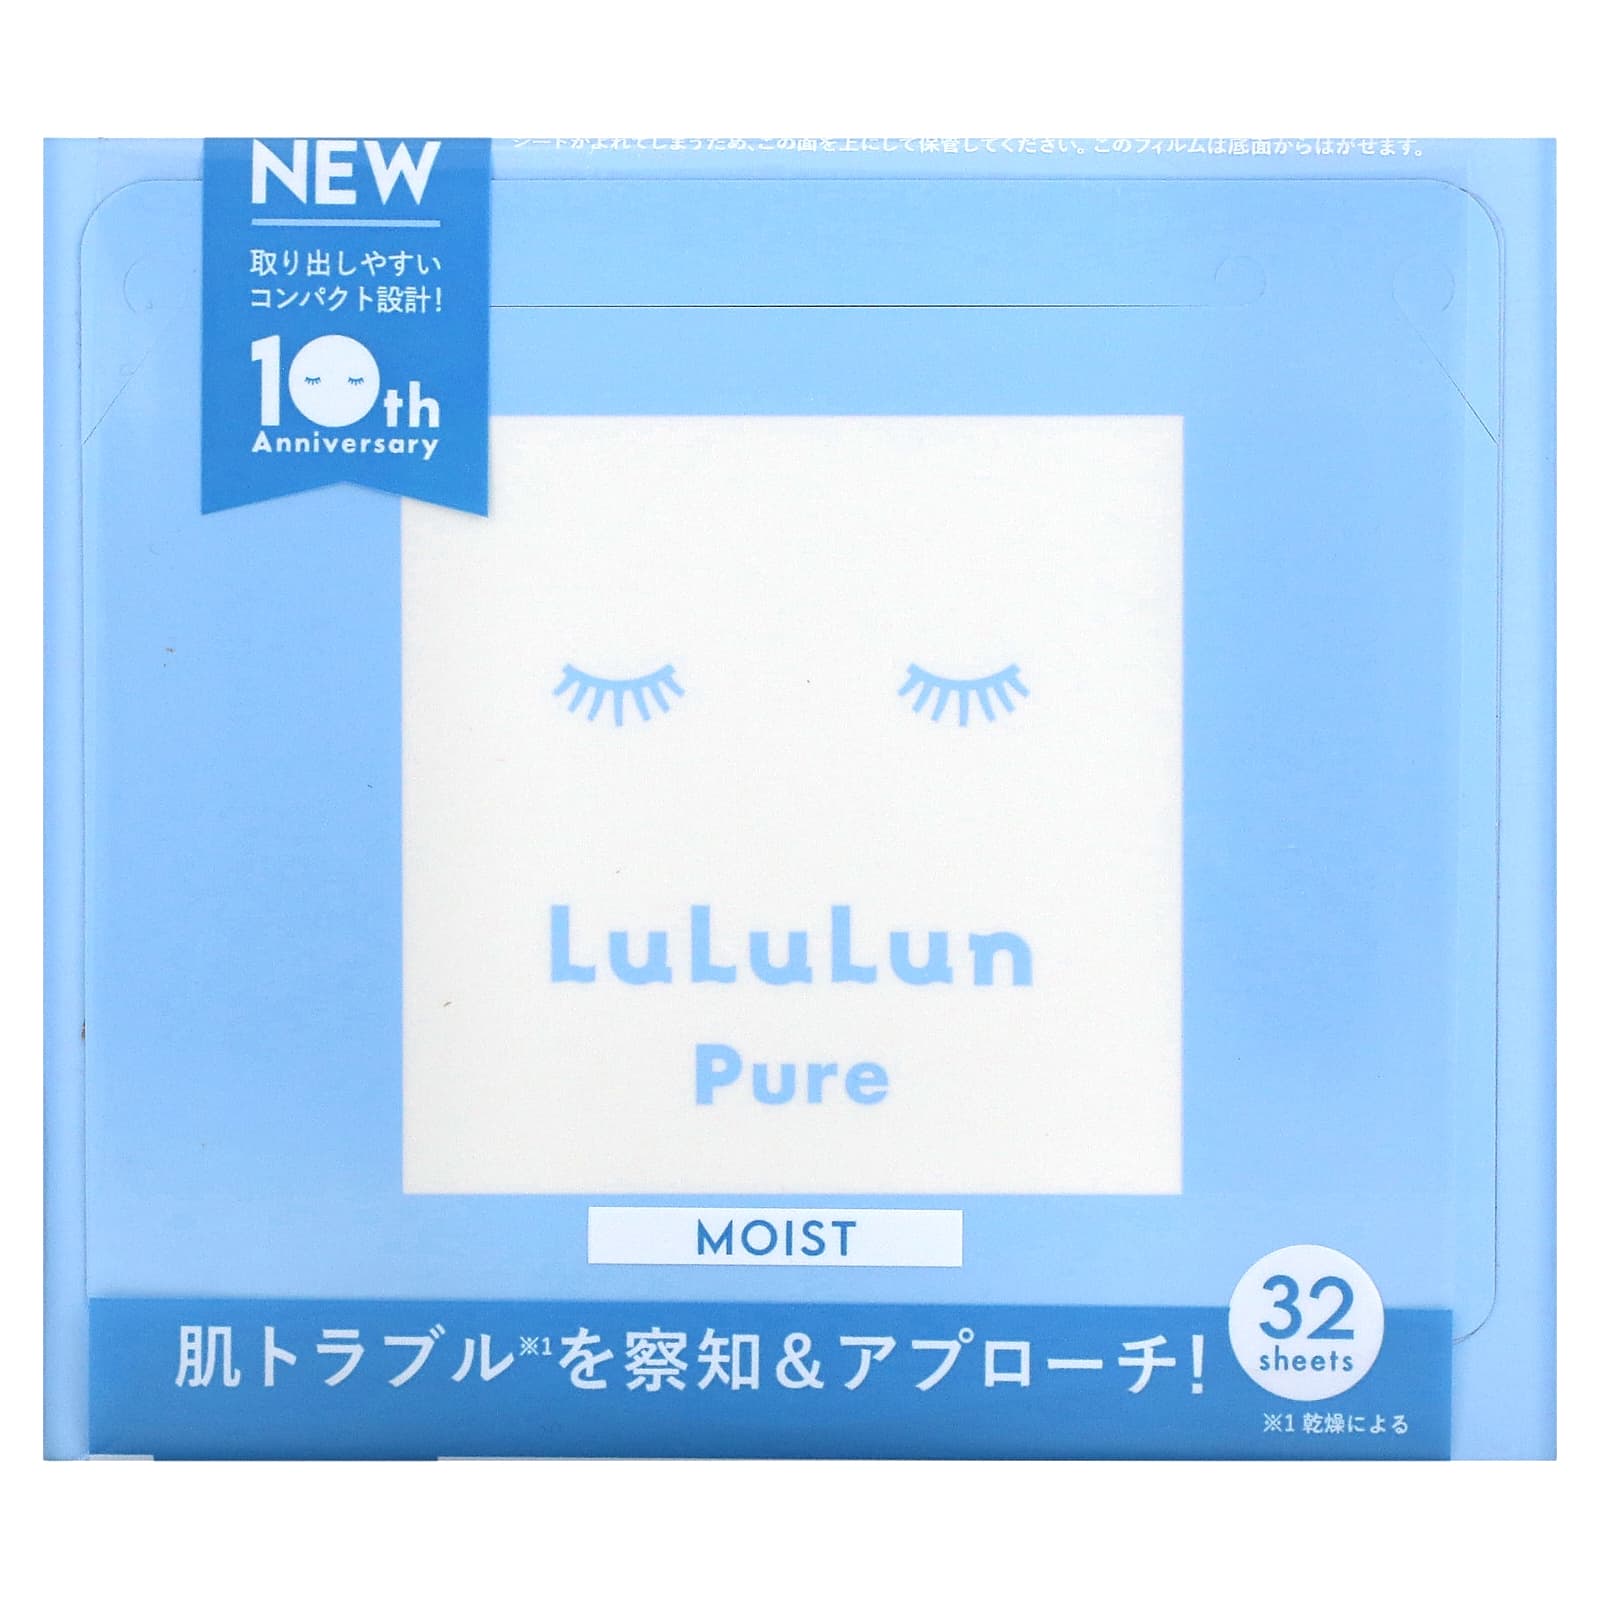 Увлажняющая Маска Lululun 6FB, чистый синий lululun beauty sheet mask увлажняющая чистый синий 6fb 32 шт